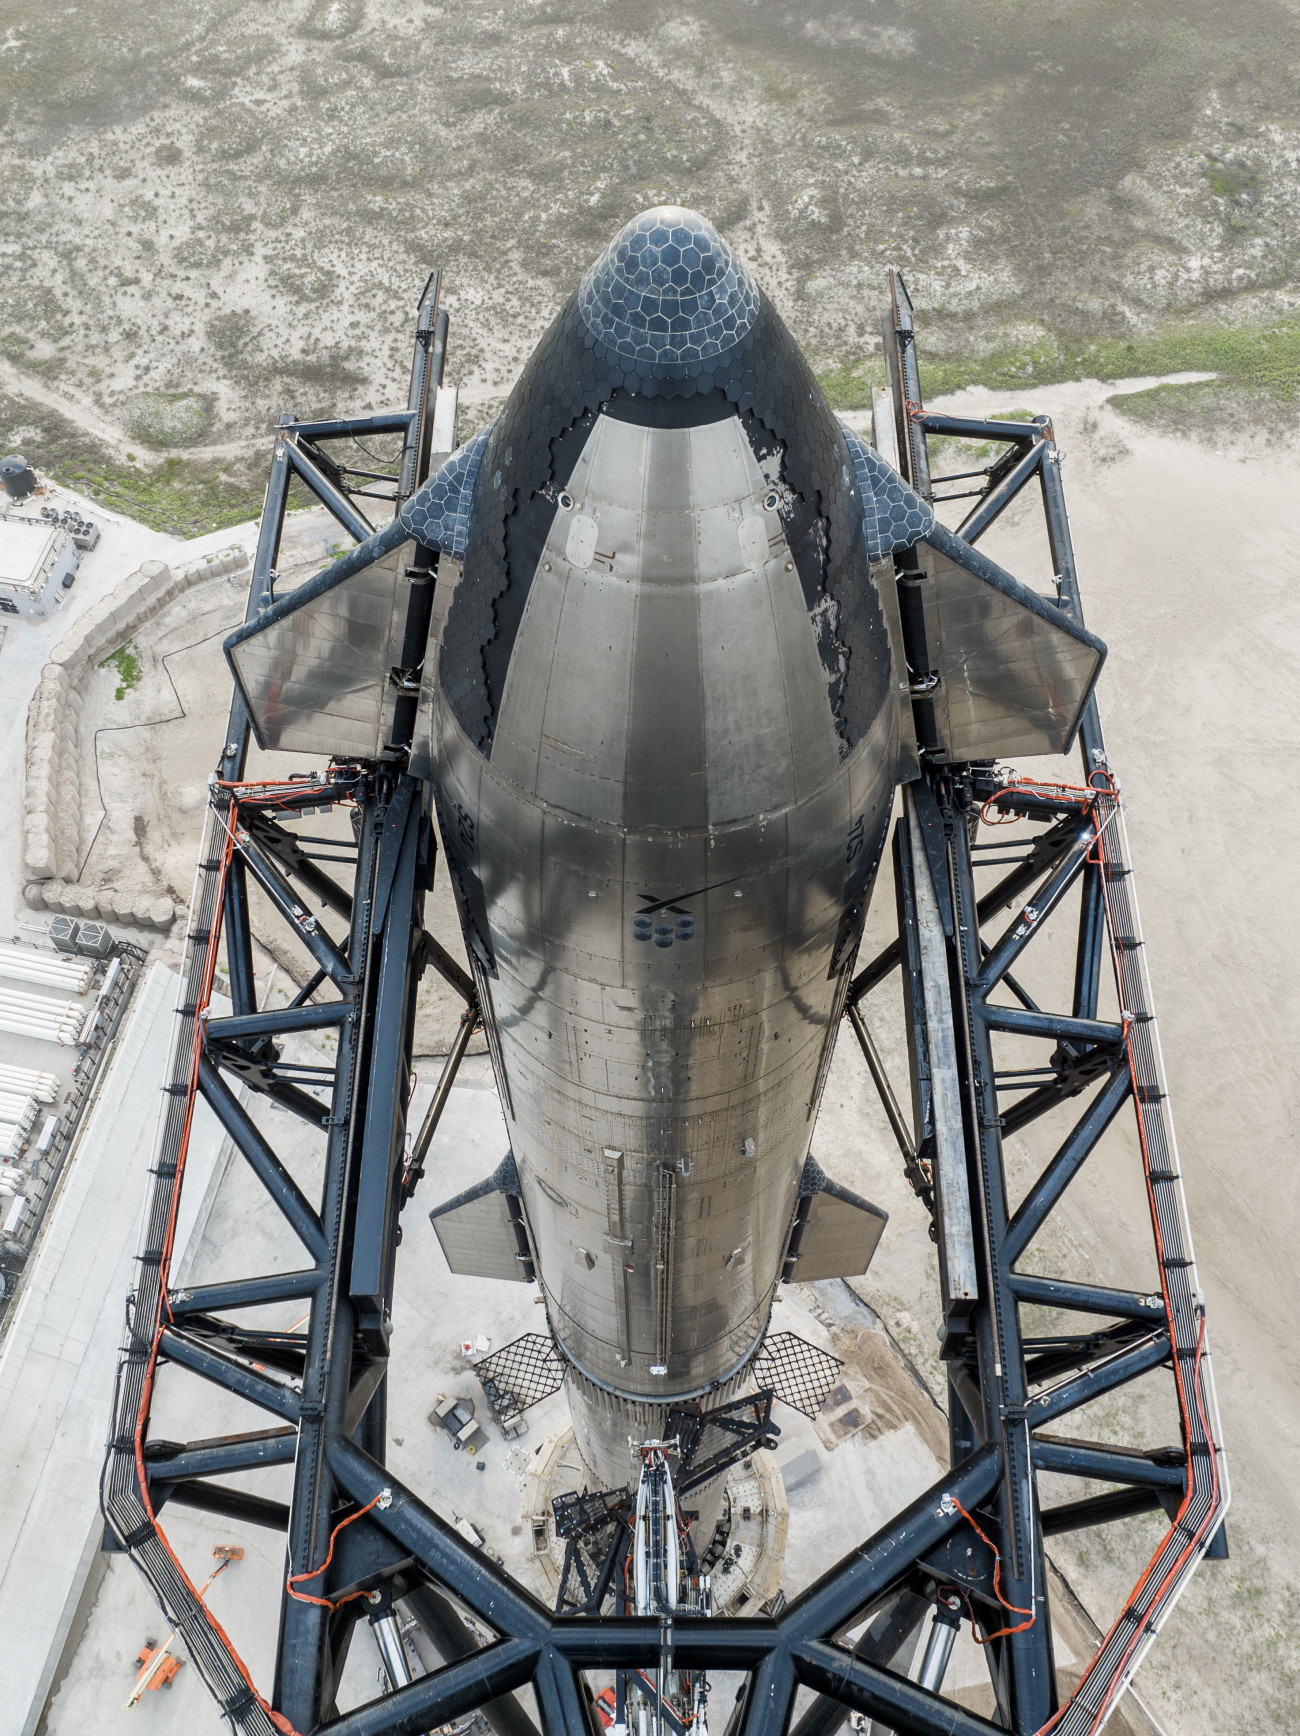 Hamarosan indul a Starship, az eddigi legnagyobb űrrakéta. Forrás:Twitter/SpaceX